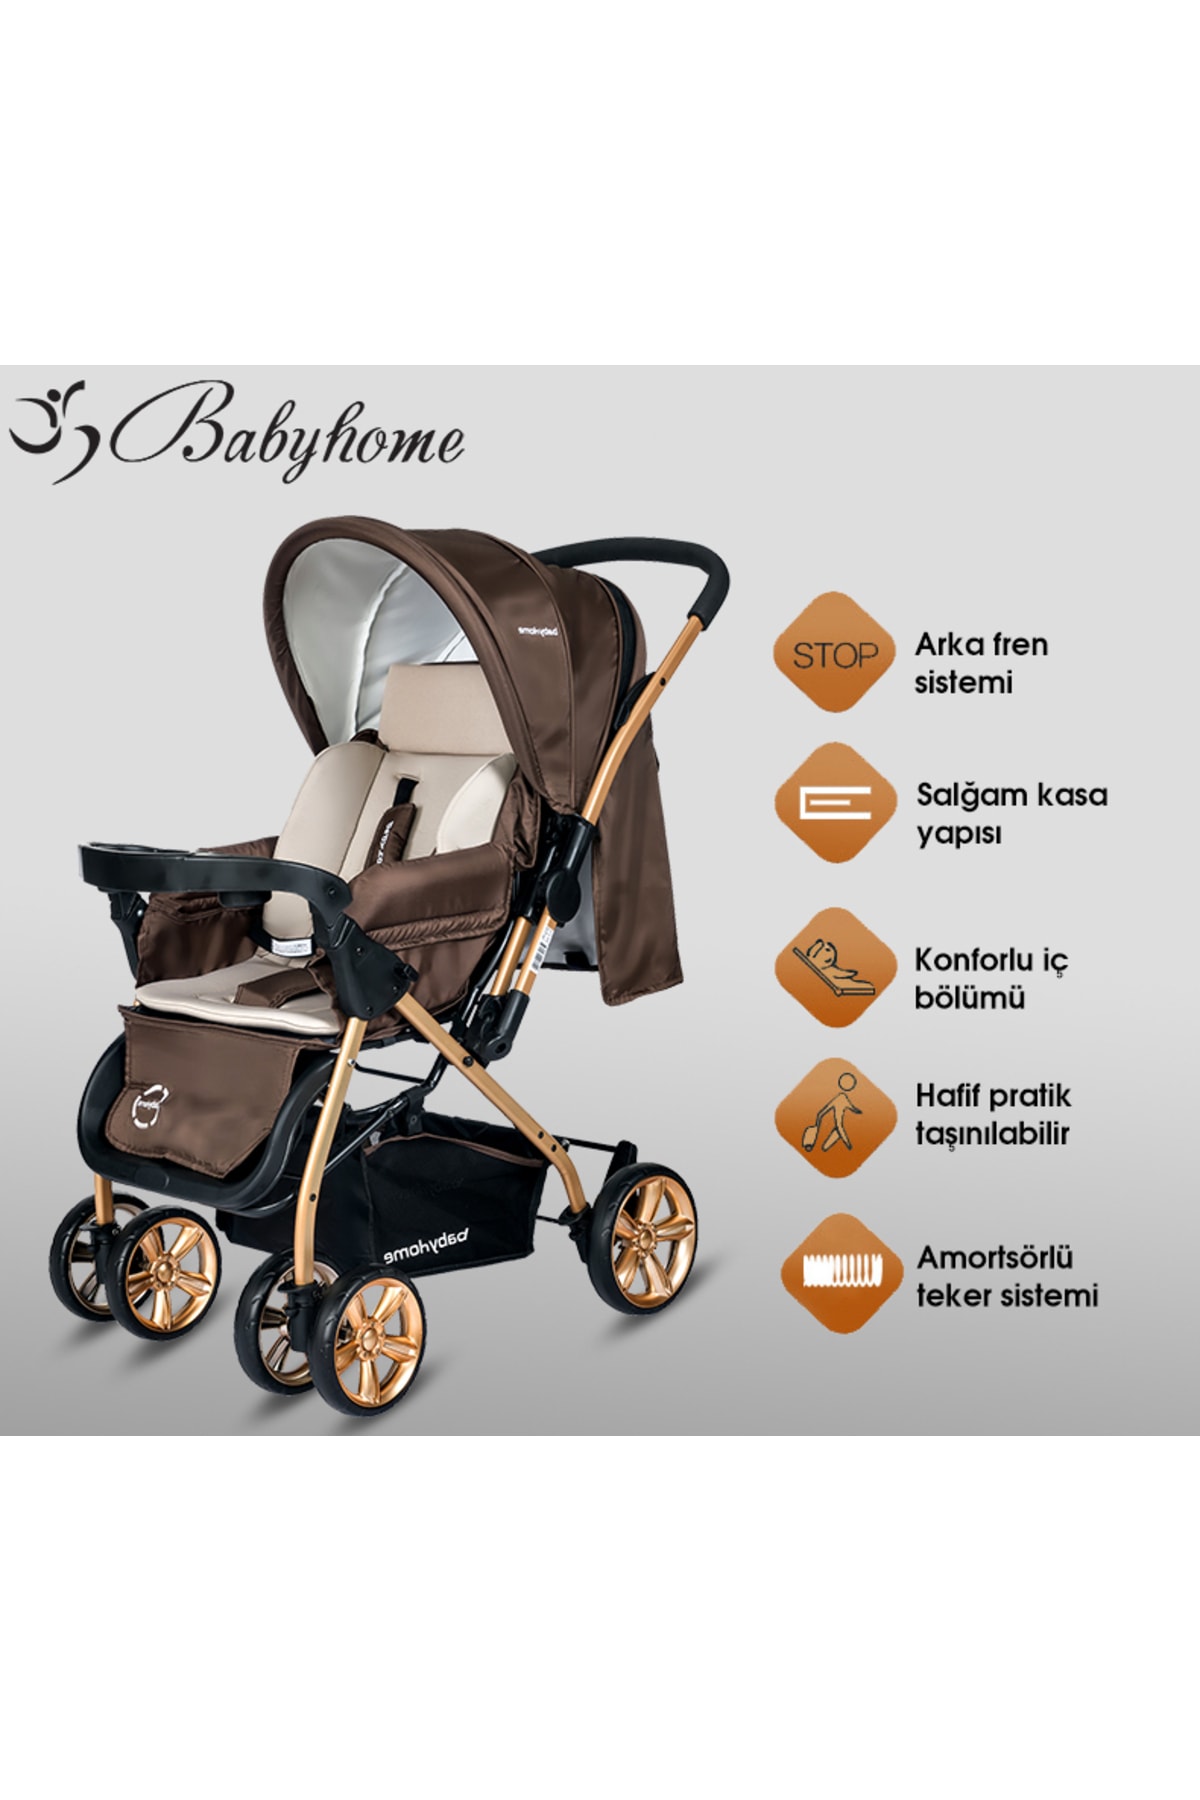 Baby Home Bh-760 Gold Bilyeli Teker Mama Tablalı Çift Yönlü Bebek Arabası NE10242